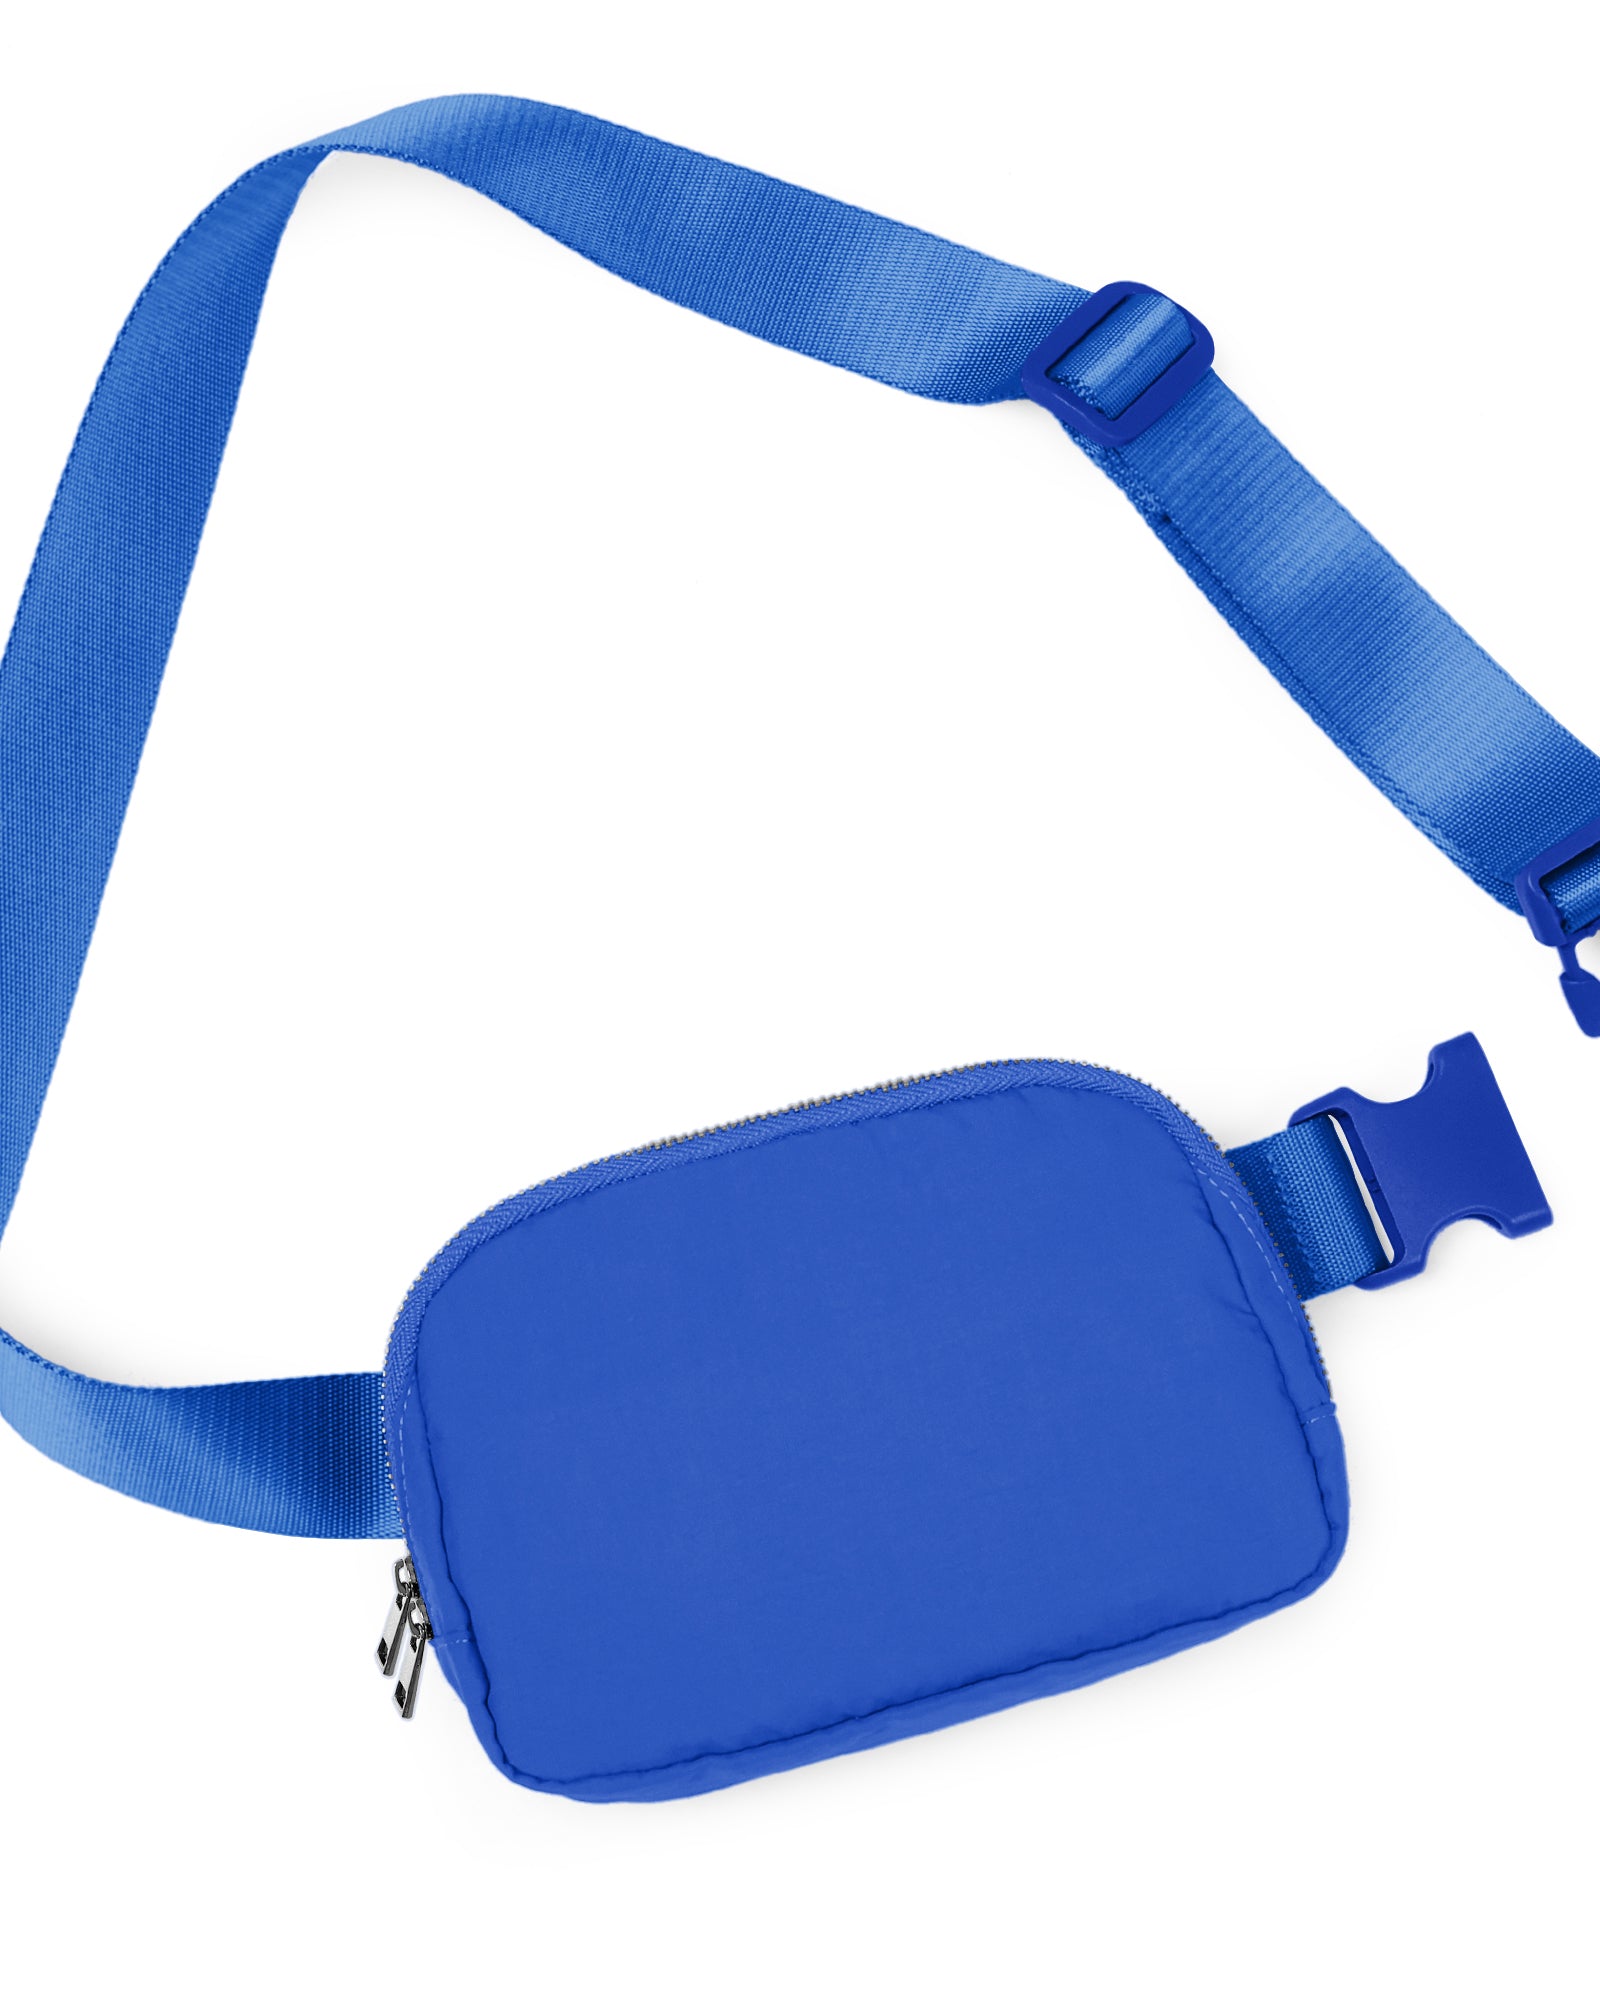 Unisex Two-Way Zip Mini Belt Bag Wild Blue 8" x 2" x 5.5" - ododos